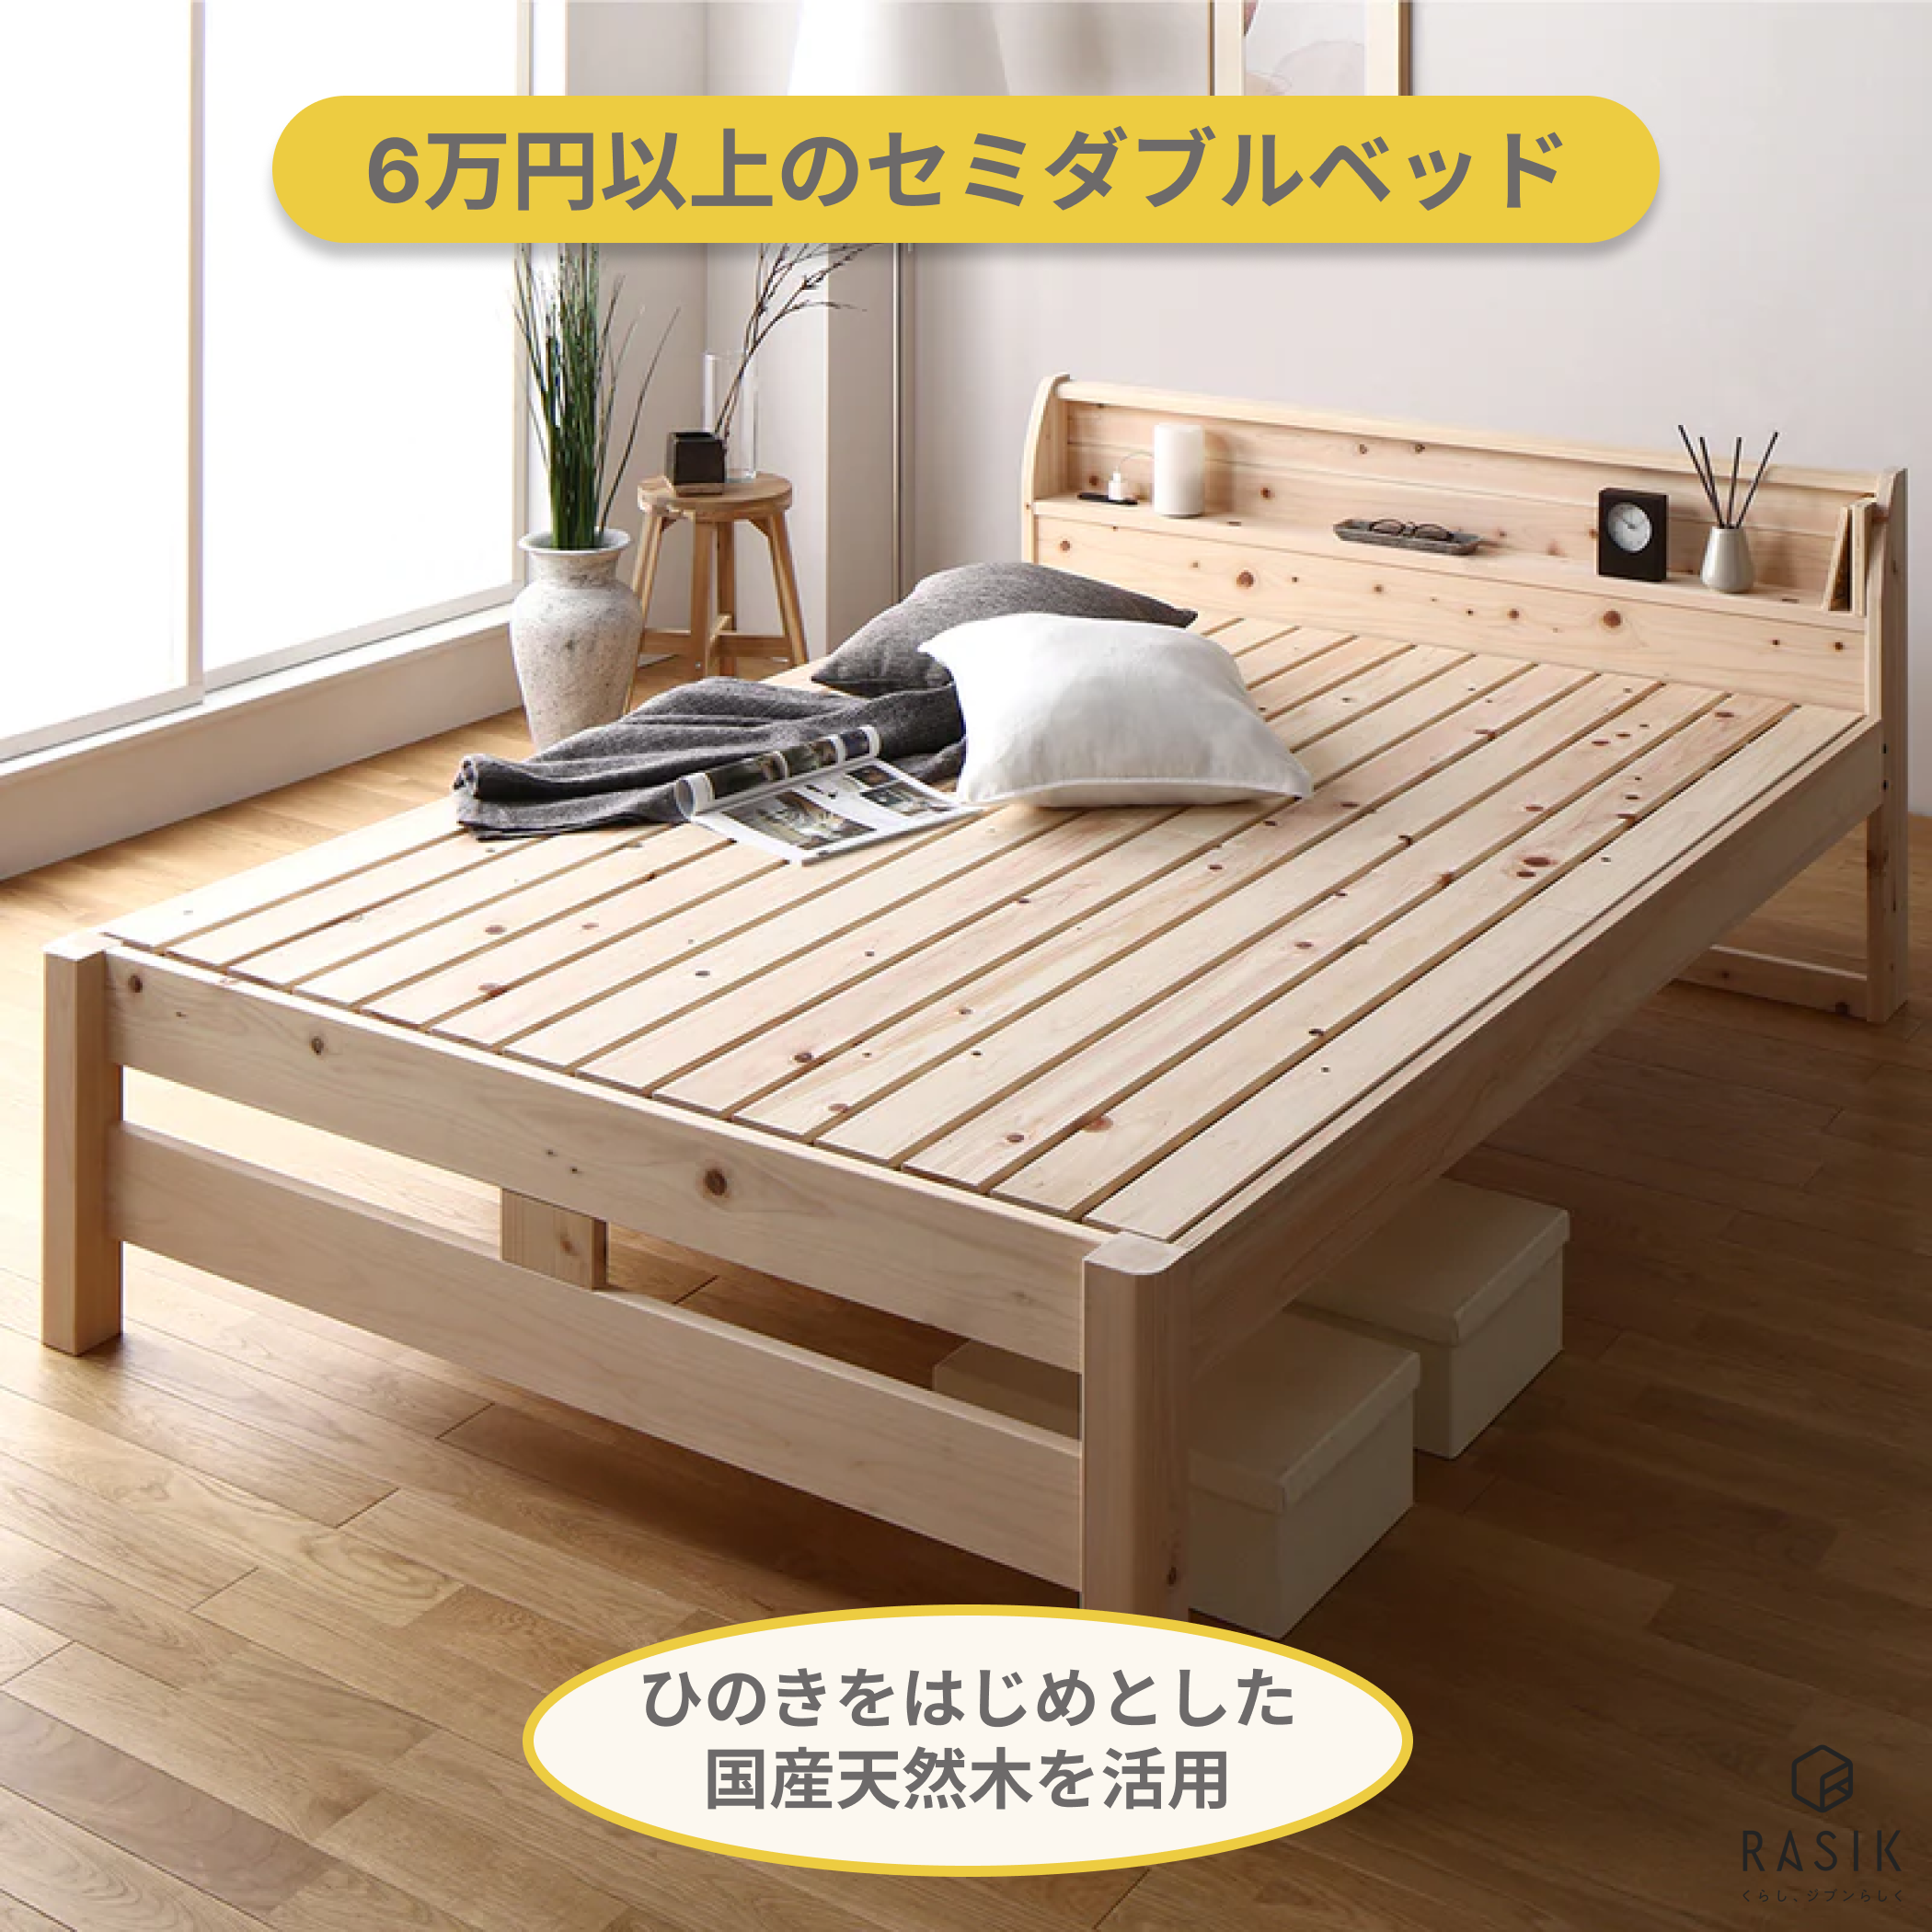 6万円以上のセミダブルベッド